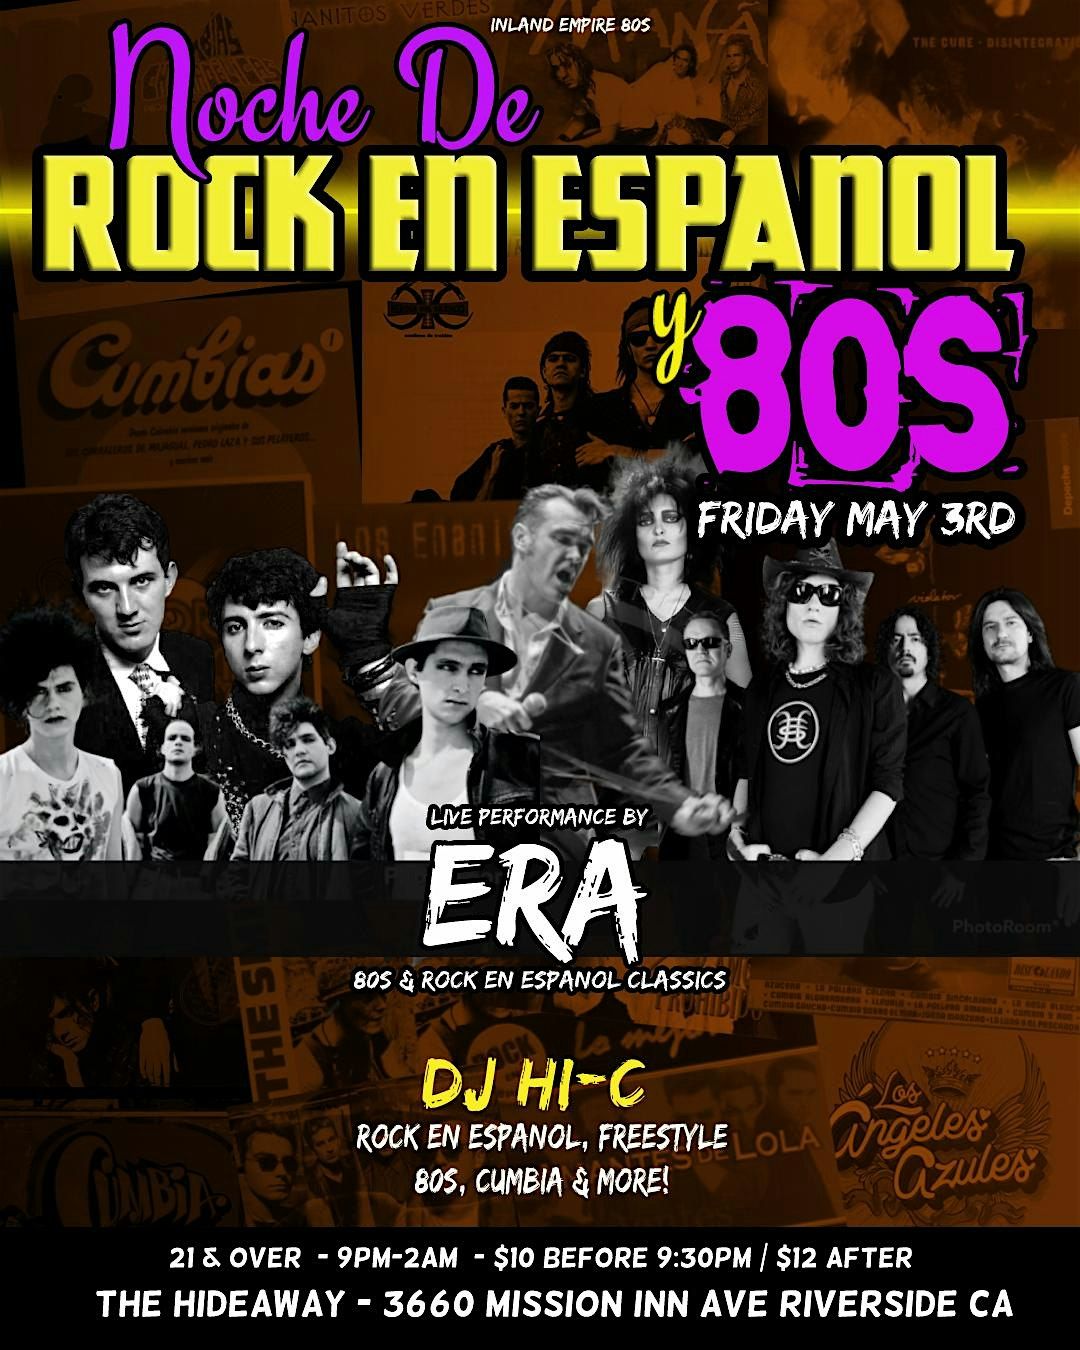 Live Rock en Espanol & 80s tribute in Riverside !